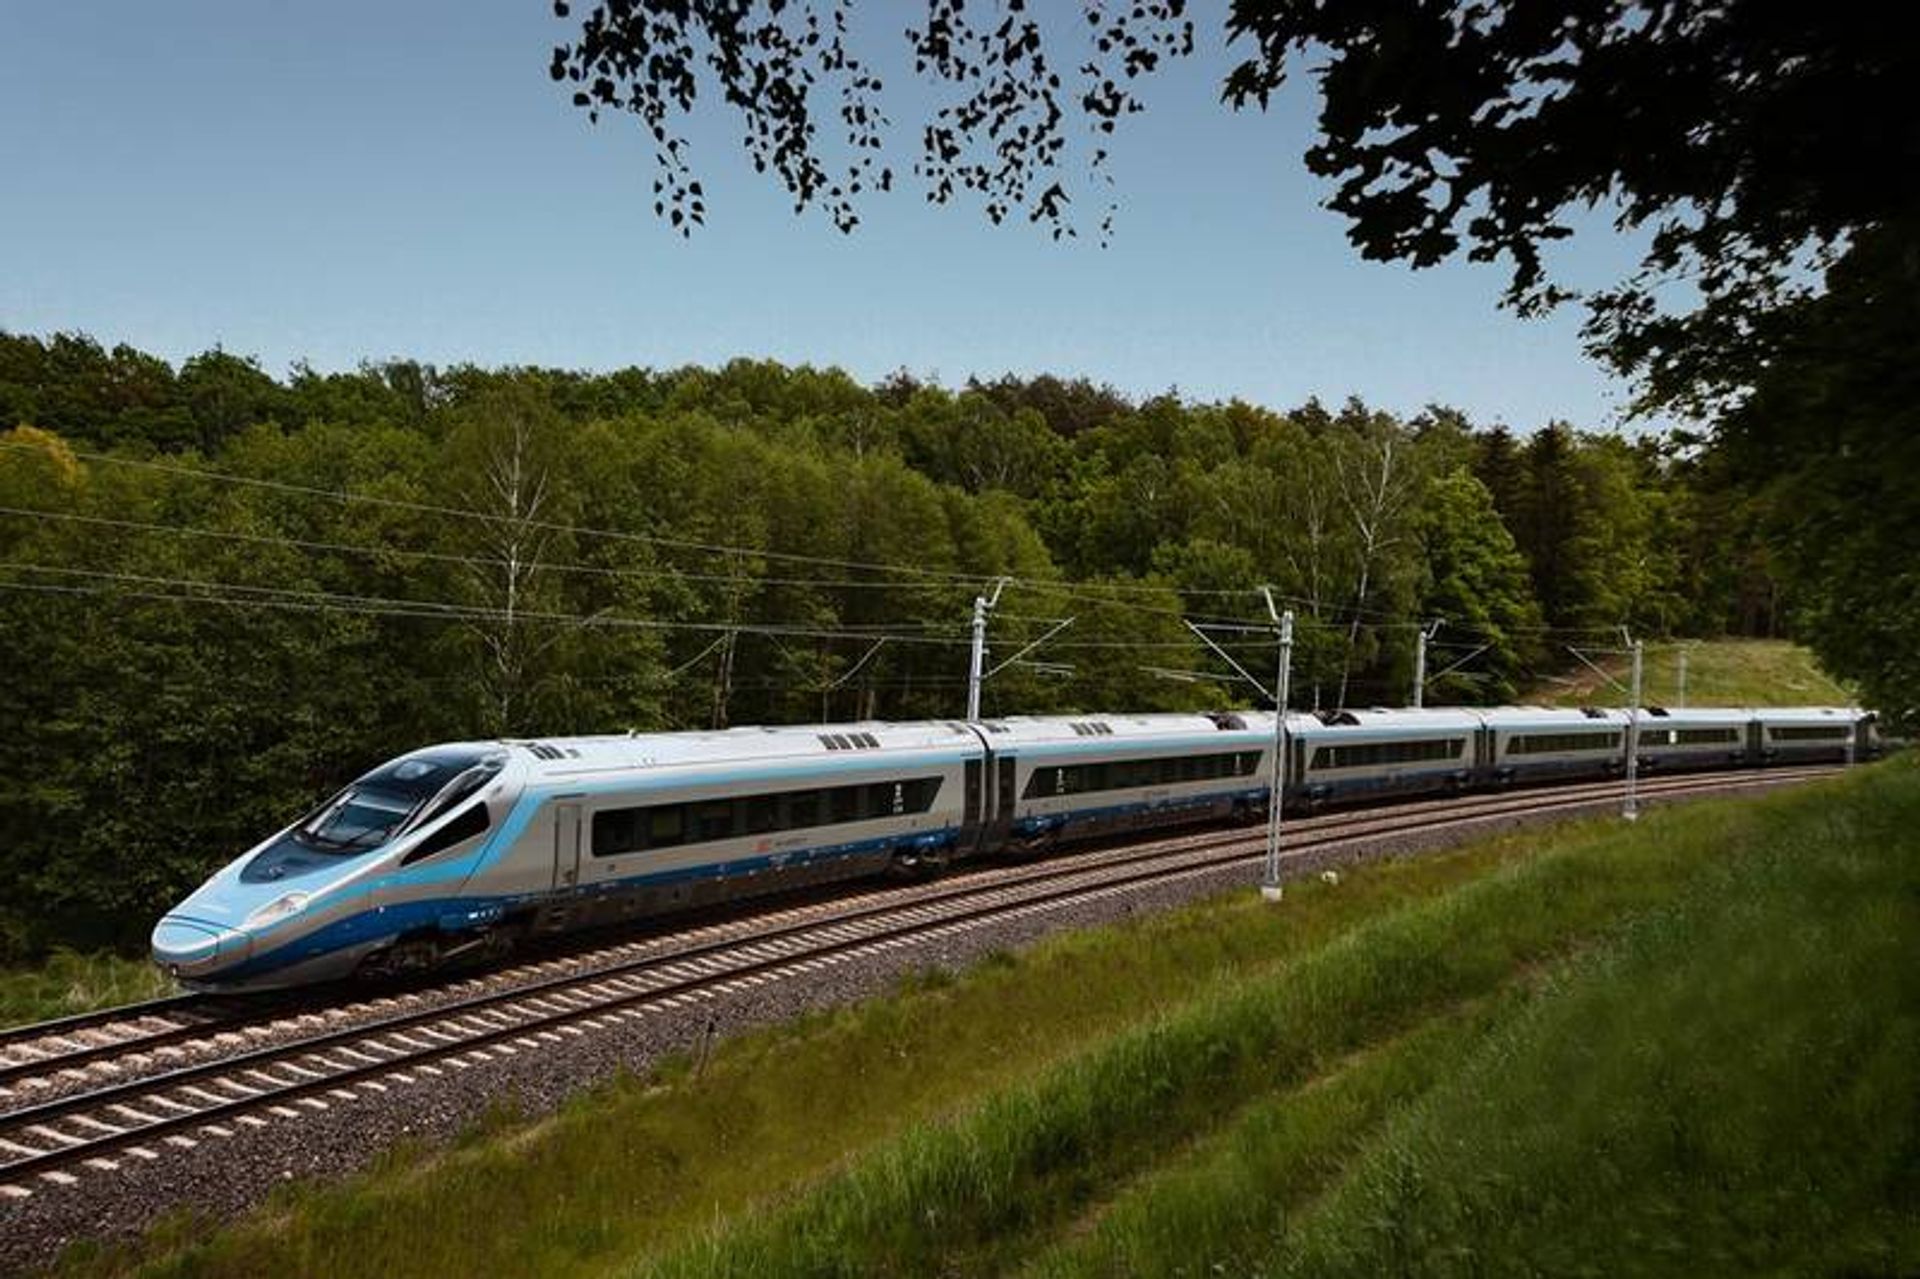 Wielomiliardowe inwestycje na kolei nabierają rozpędu. Pociągi będą się poruszać z maksymalną prędkością 250 km/h